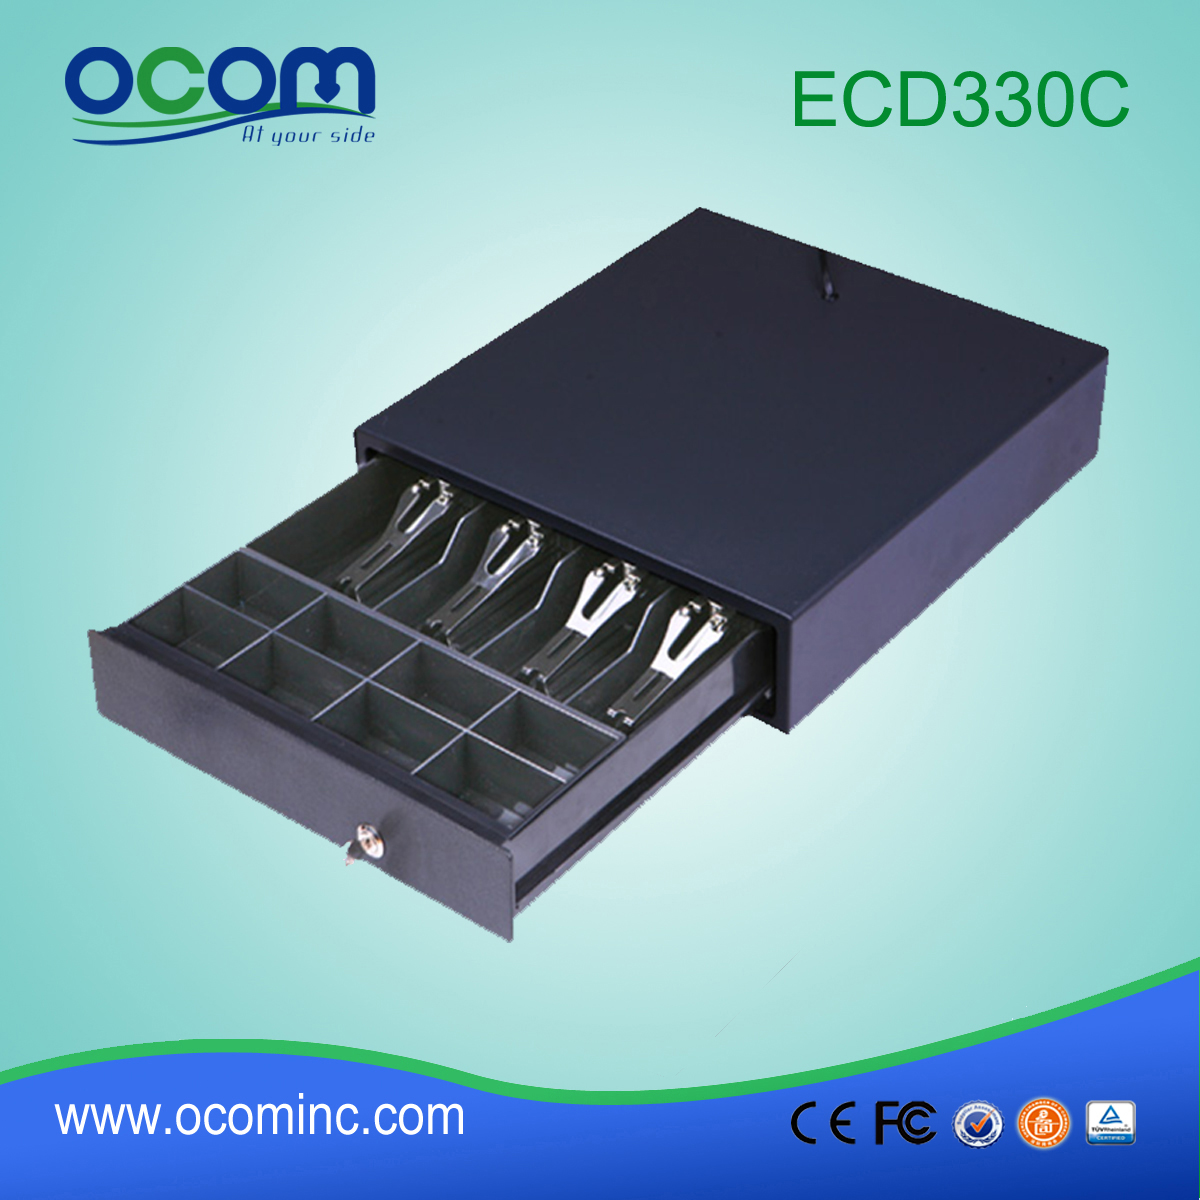 (ECD330C) Nowa czarna szuflada kasowa pos